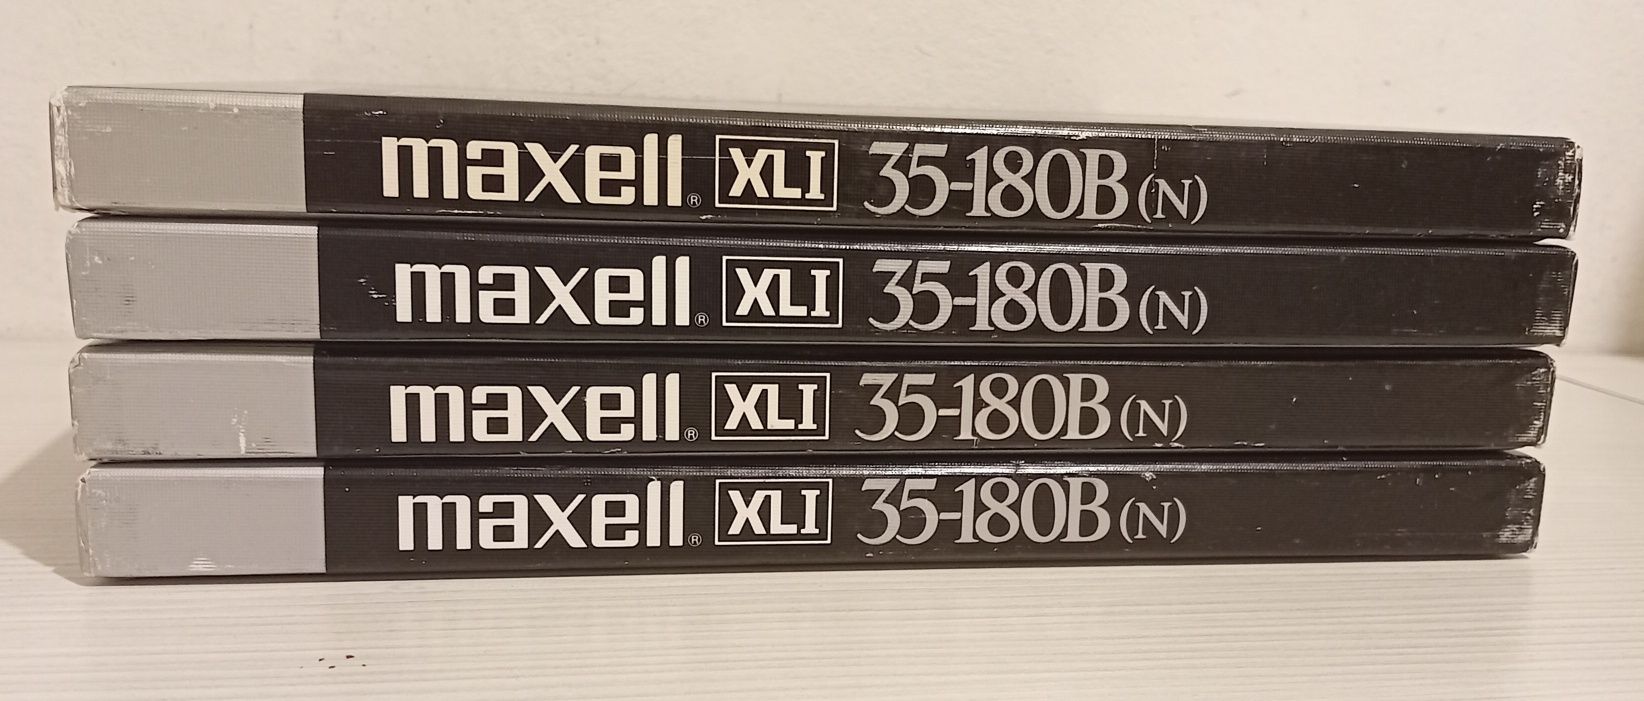 Benzi banda magnetofon Maxell XL1 35-180 metalice de 26,5 cm